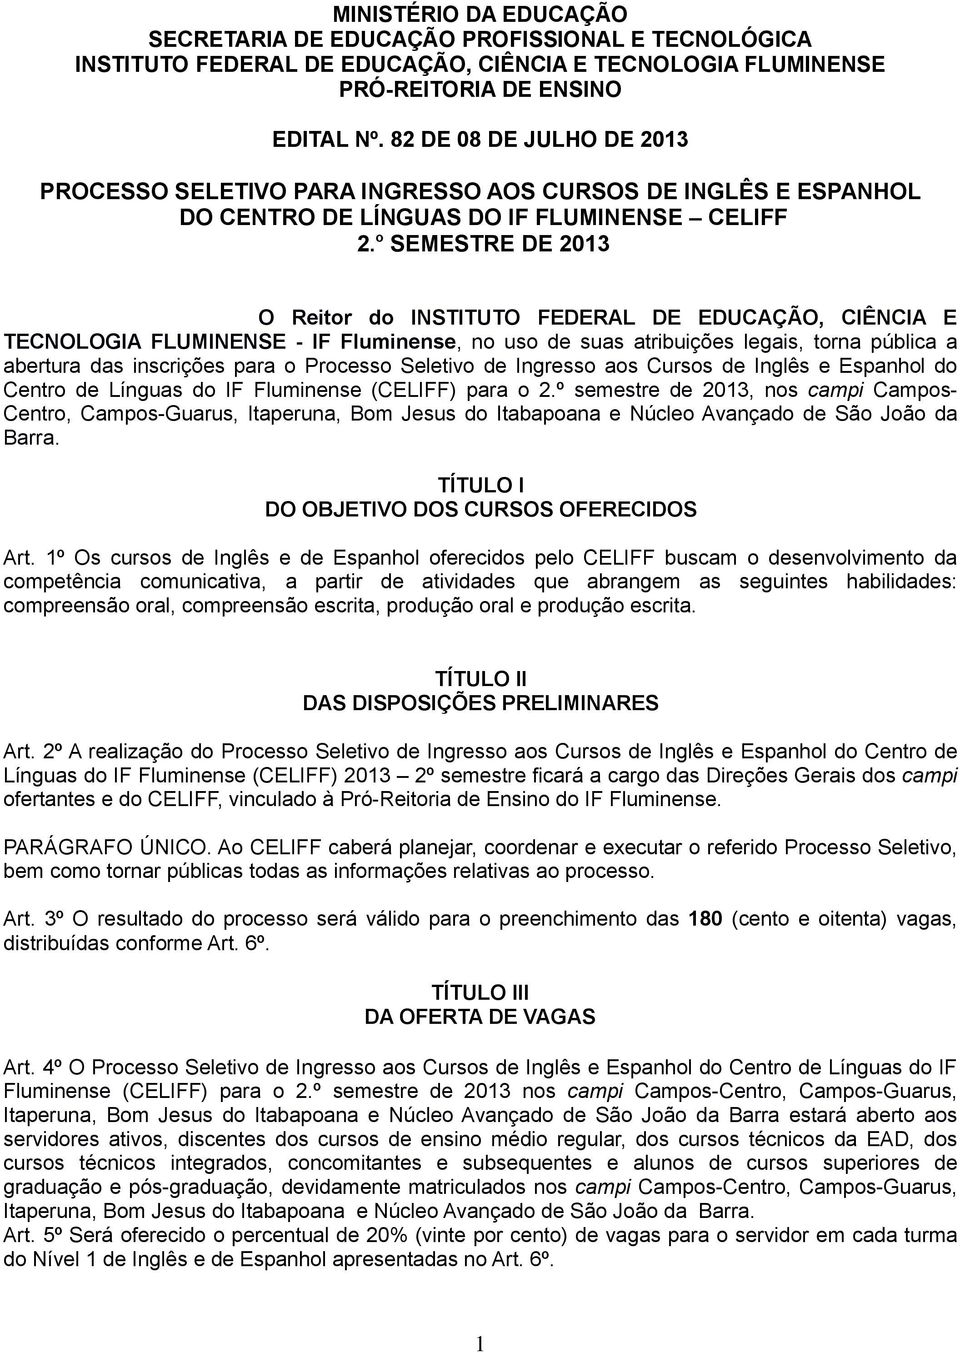 Processo Seletivo de Ingresso aos Cursos de Inglês e Espanhol do Centro de Línguas do IF Fluminense (CELIFF) para o 2.